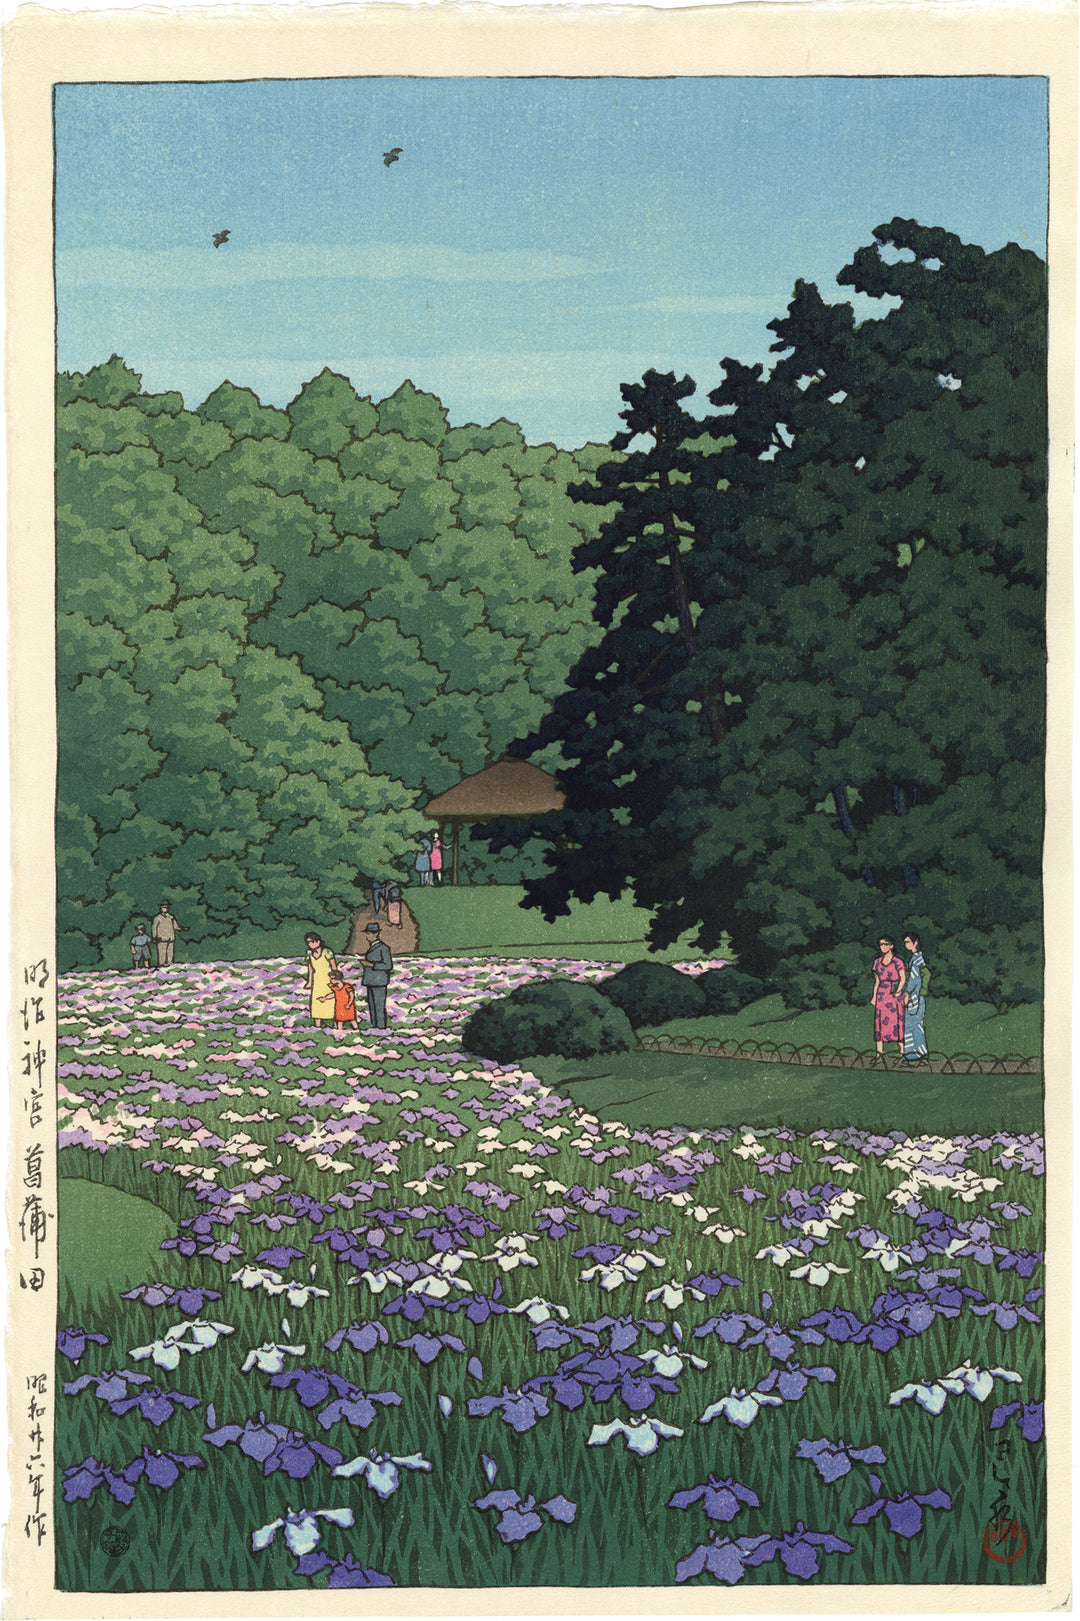 東京明治神社鳶尾花園 by Hasui Kawase - 1951 - 38.8 x 25.8 cm 